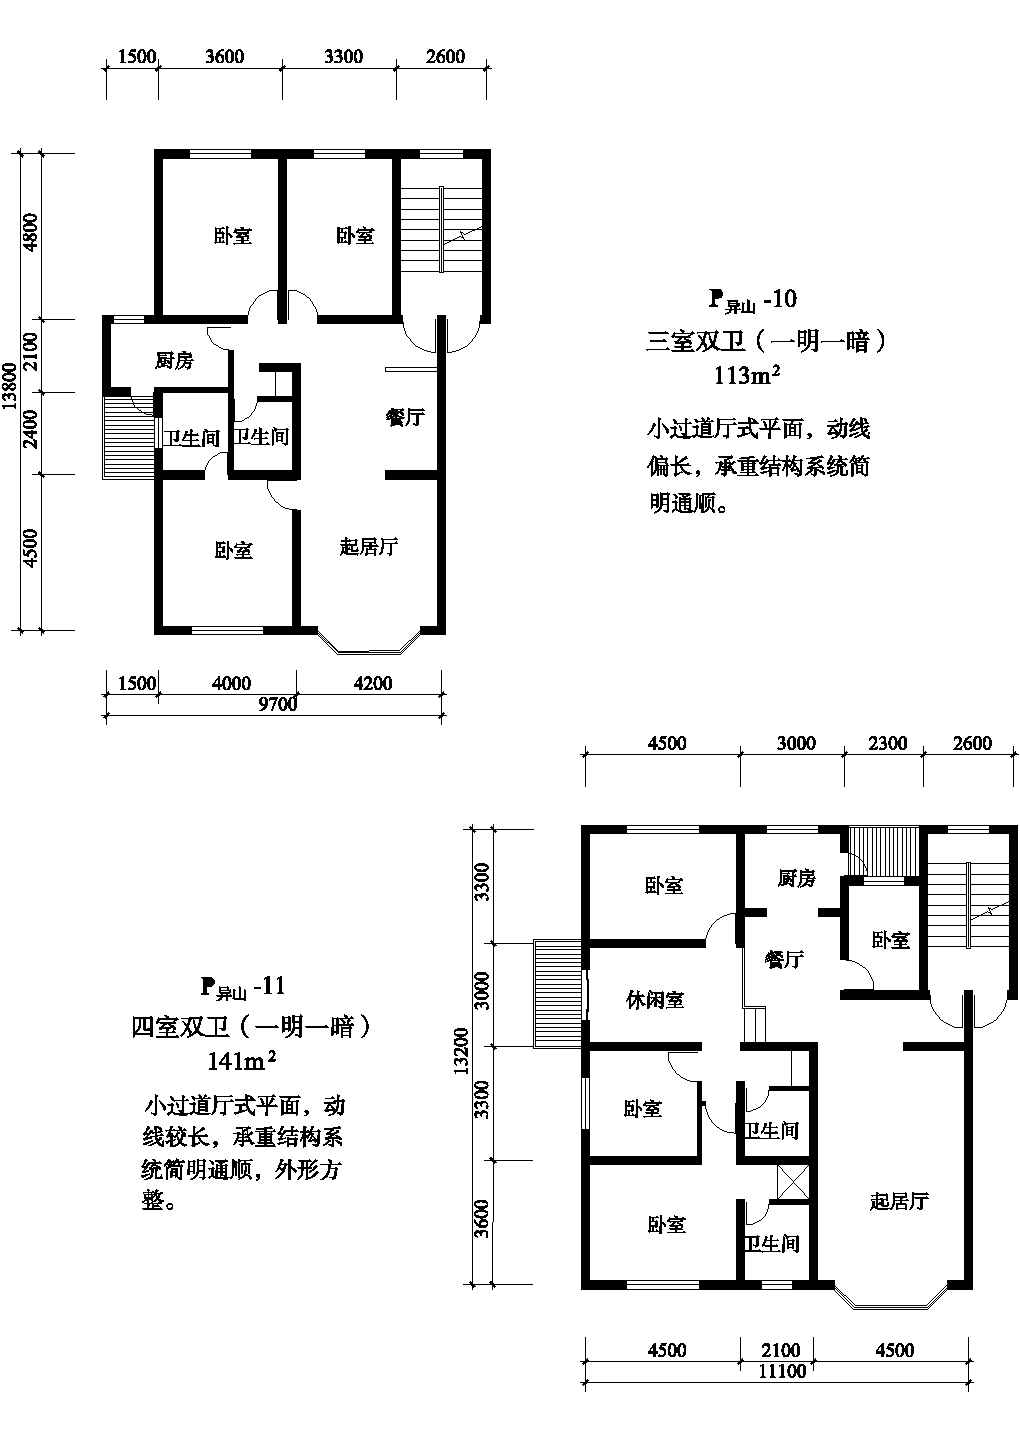 三室113/141平方单元式住宅平面图纸